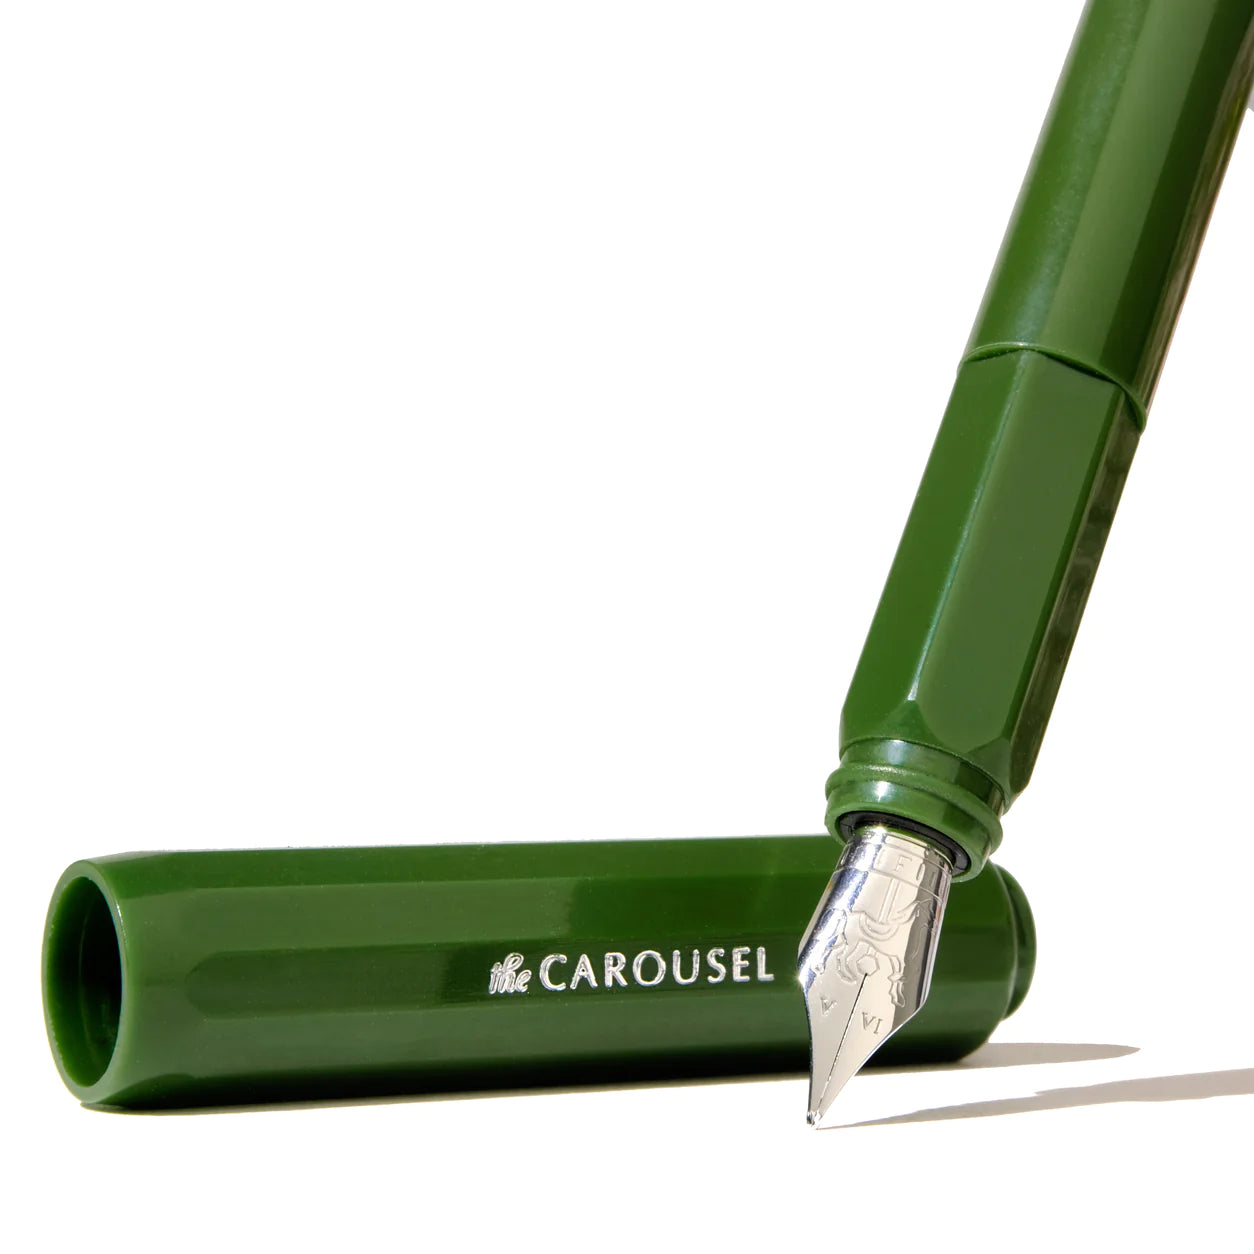 The Carousel Fountain Pen - Brilliant Beanstalk (Edición Limitada)